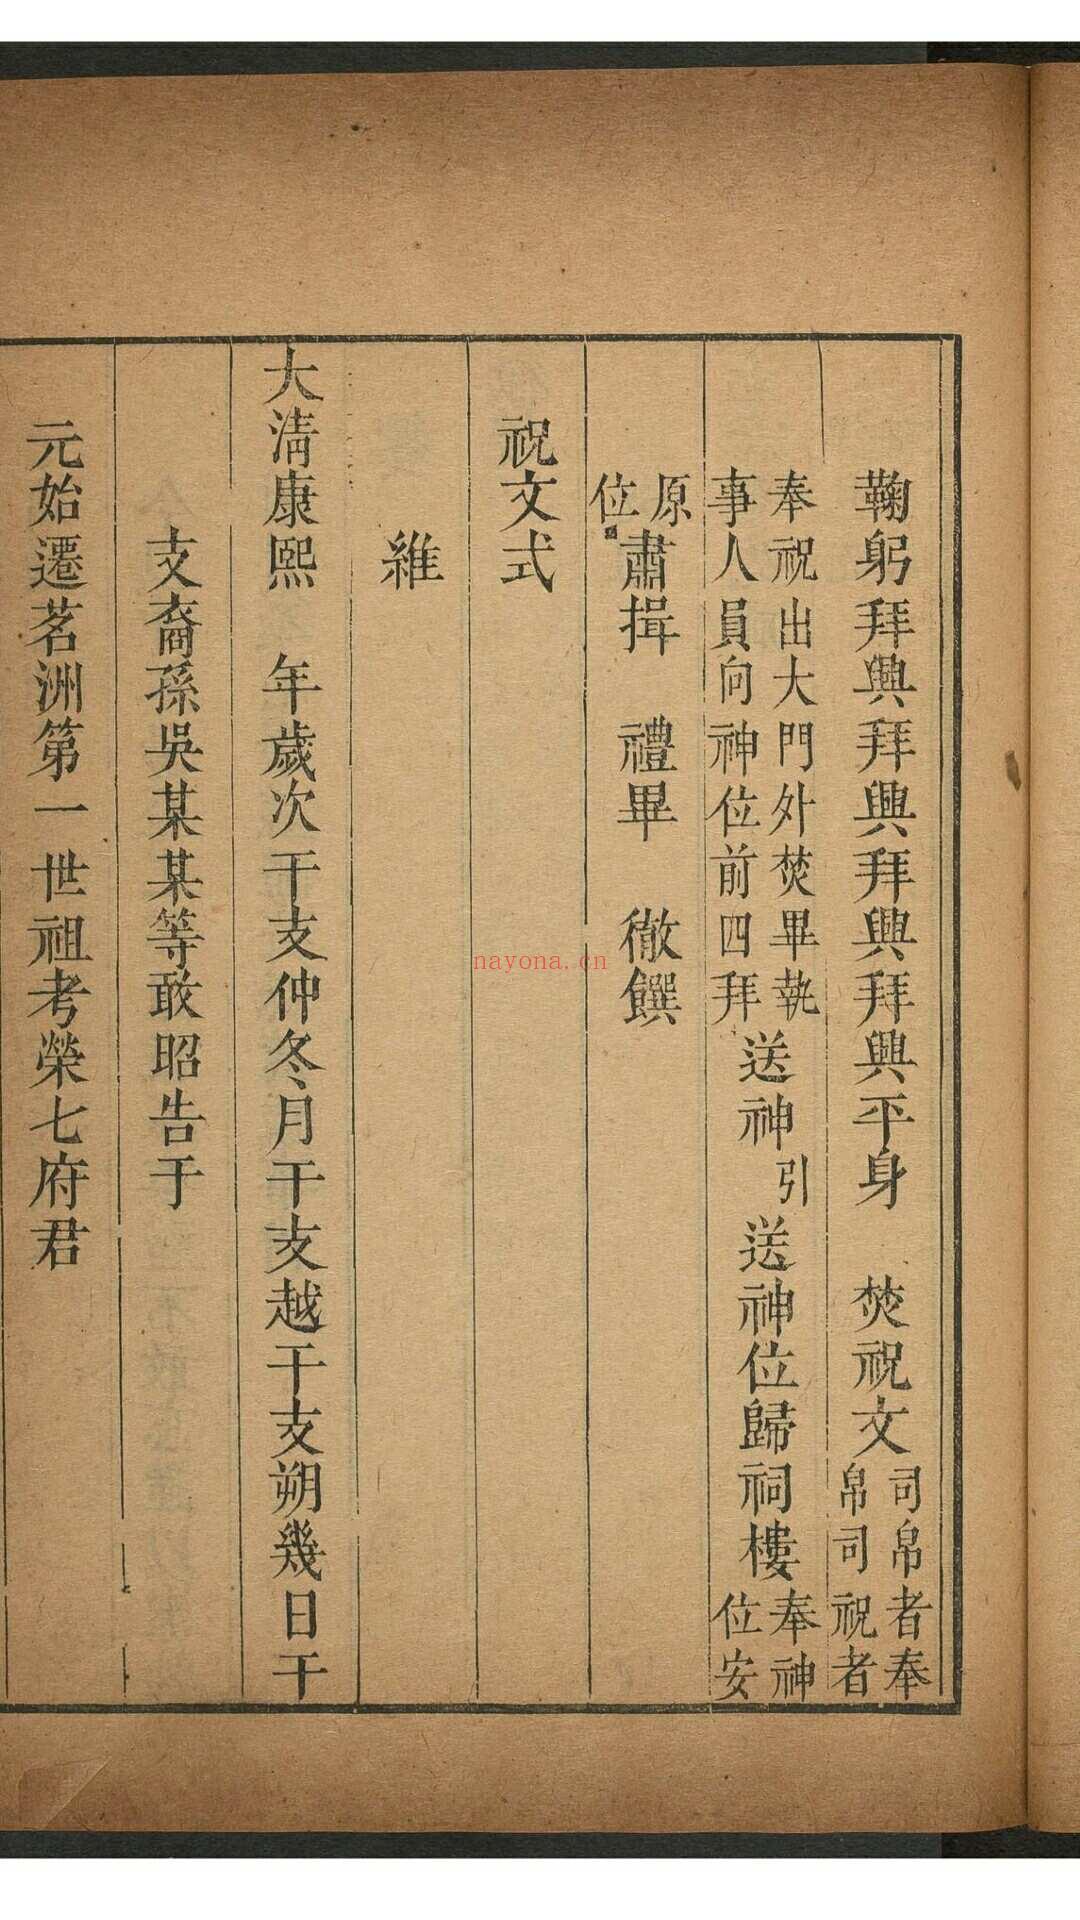 茗洲吴氏家典 八卷. 紫阳书院, 清雍正13年